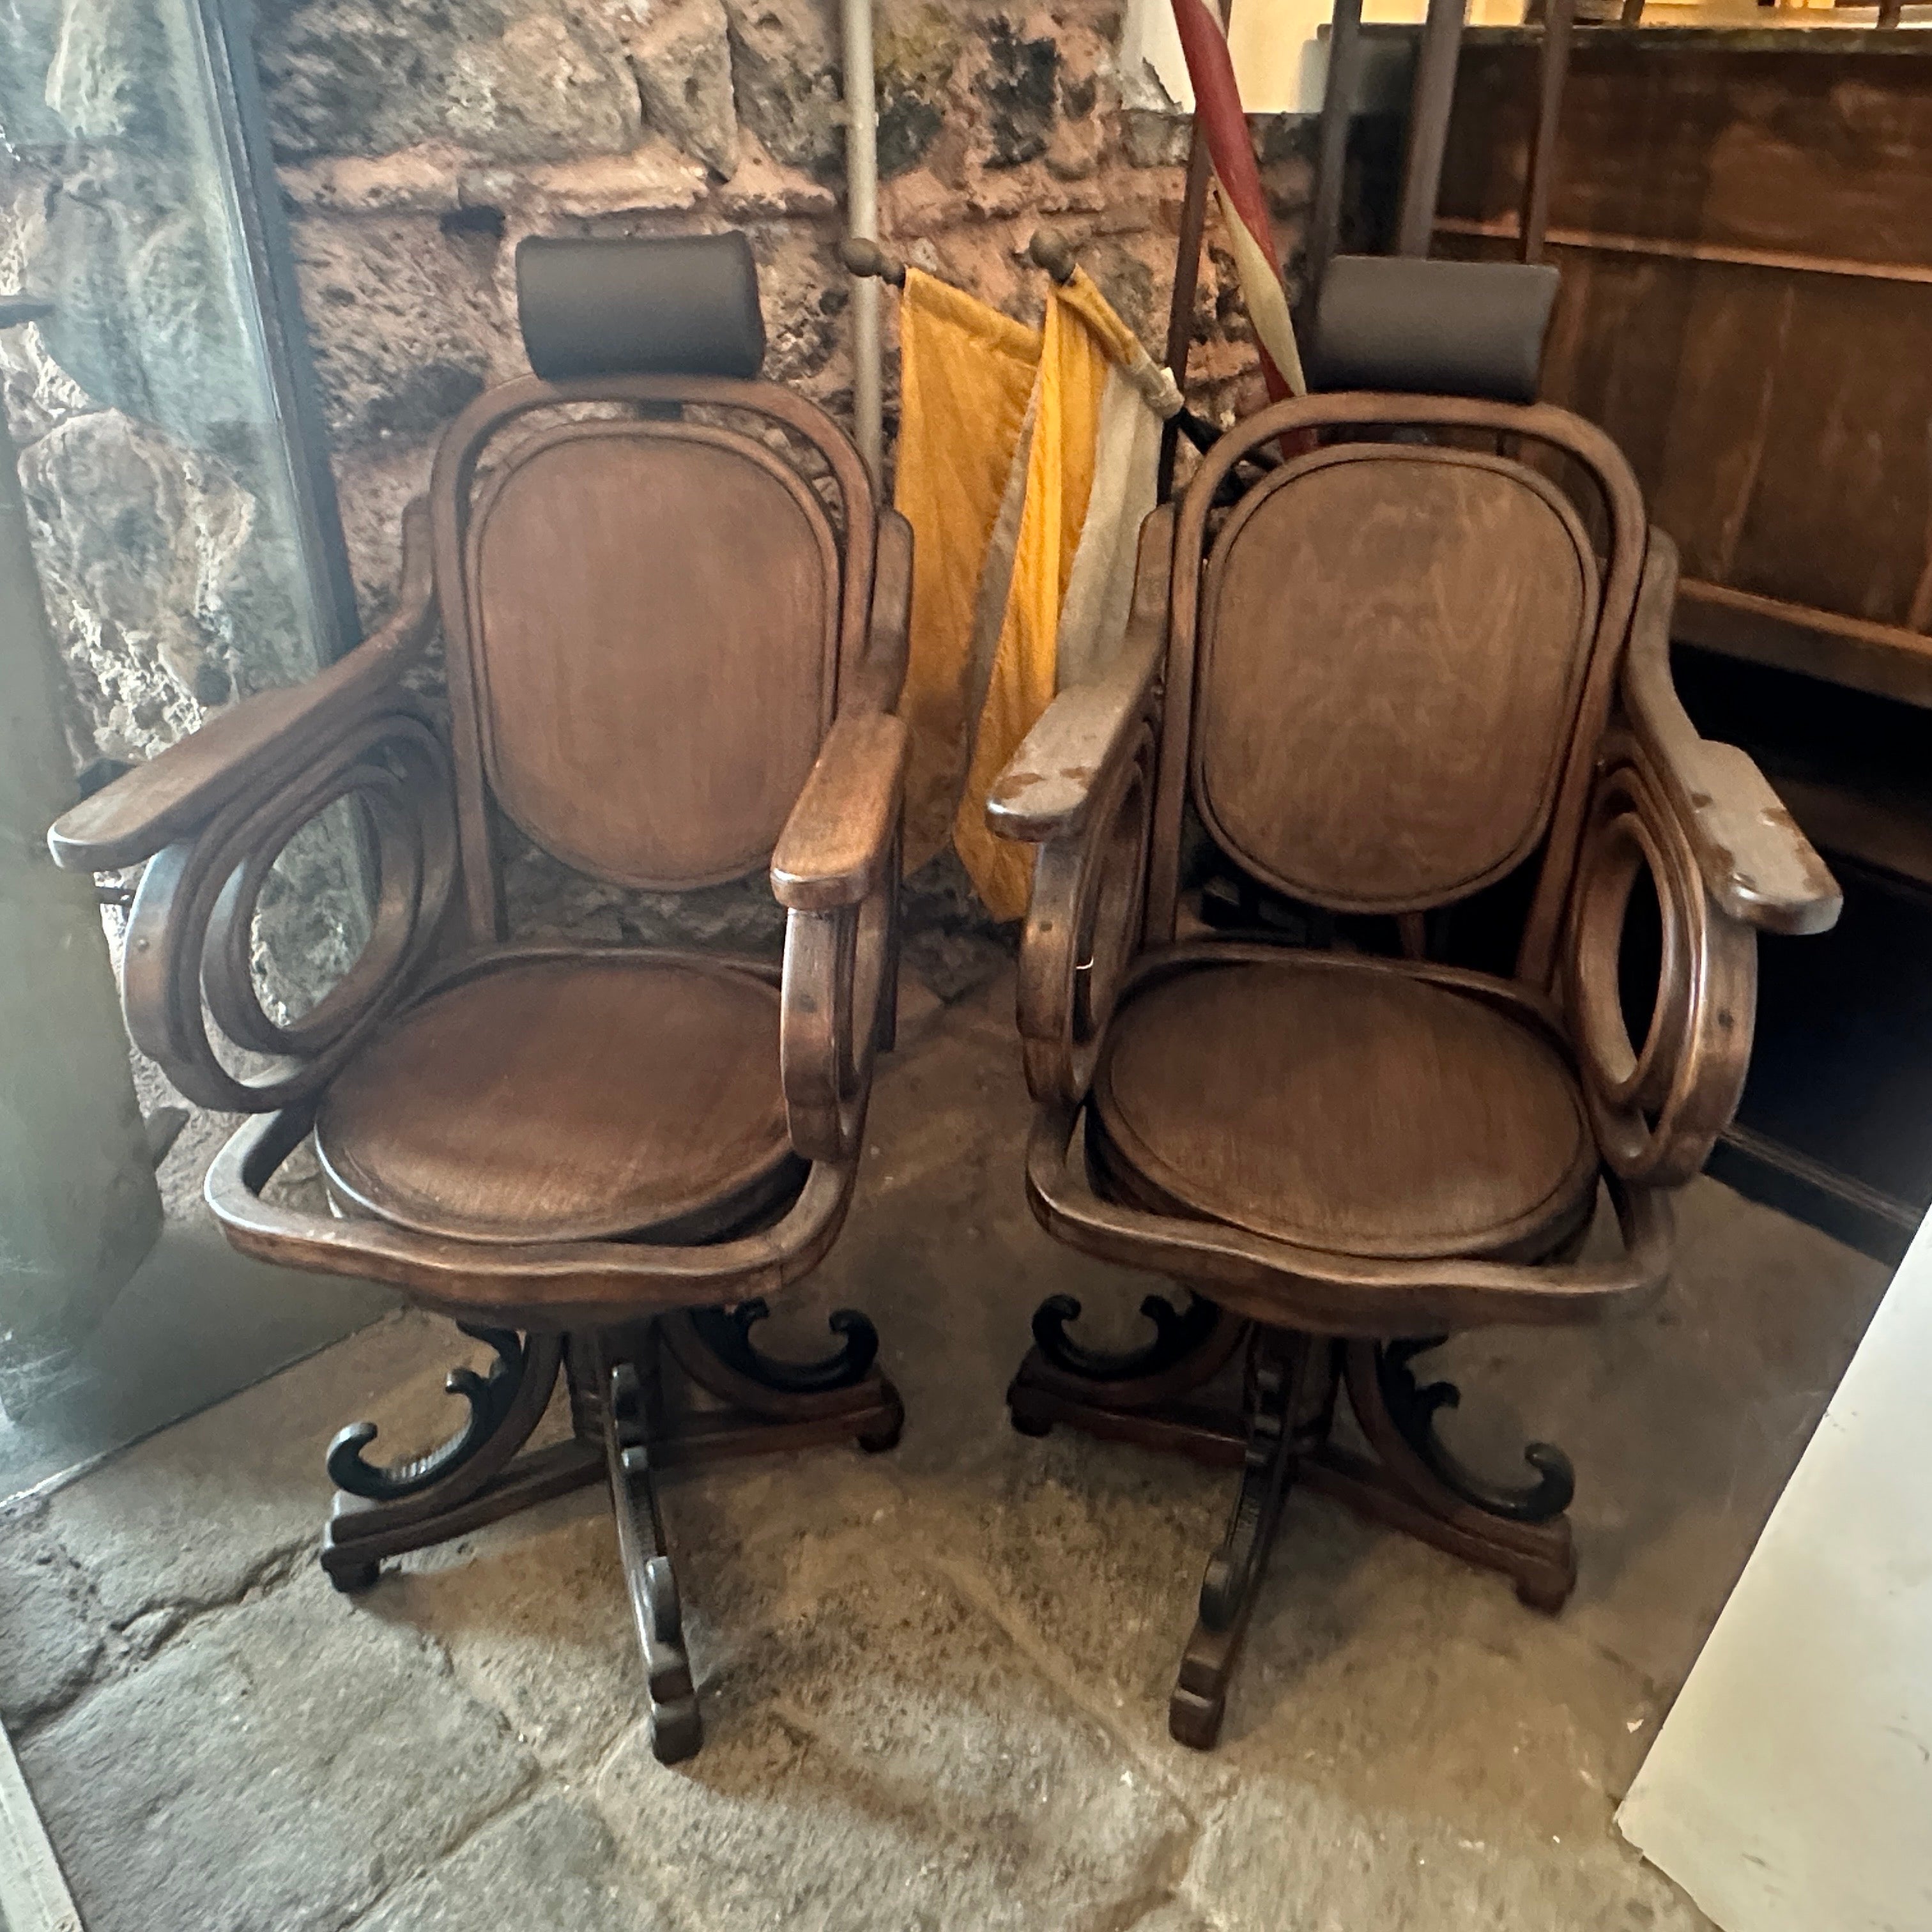 Deux fauteuils pivotants utilisés dans un salon de coiffure au début du 20ème siècle, ils ont été restaurés, les parties en bois sont en bon état, les appuis-tête ont également été restaurés et recouverts de cuir marron, ce sont des exemples exquis